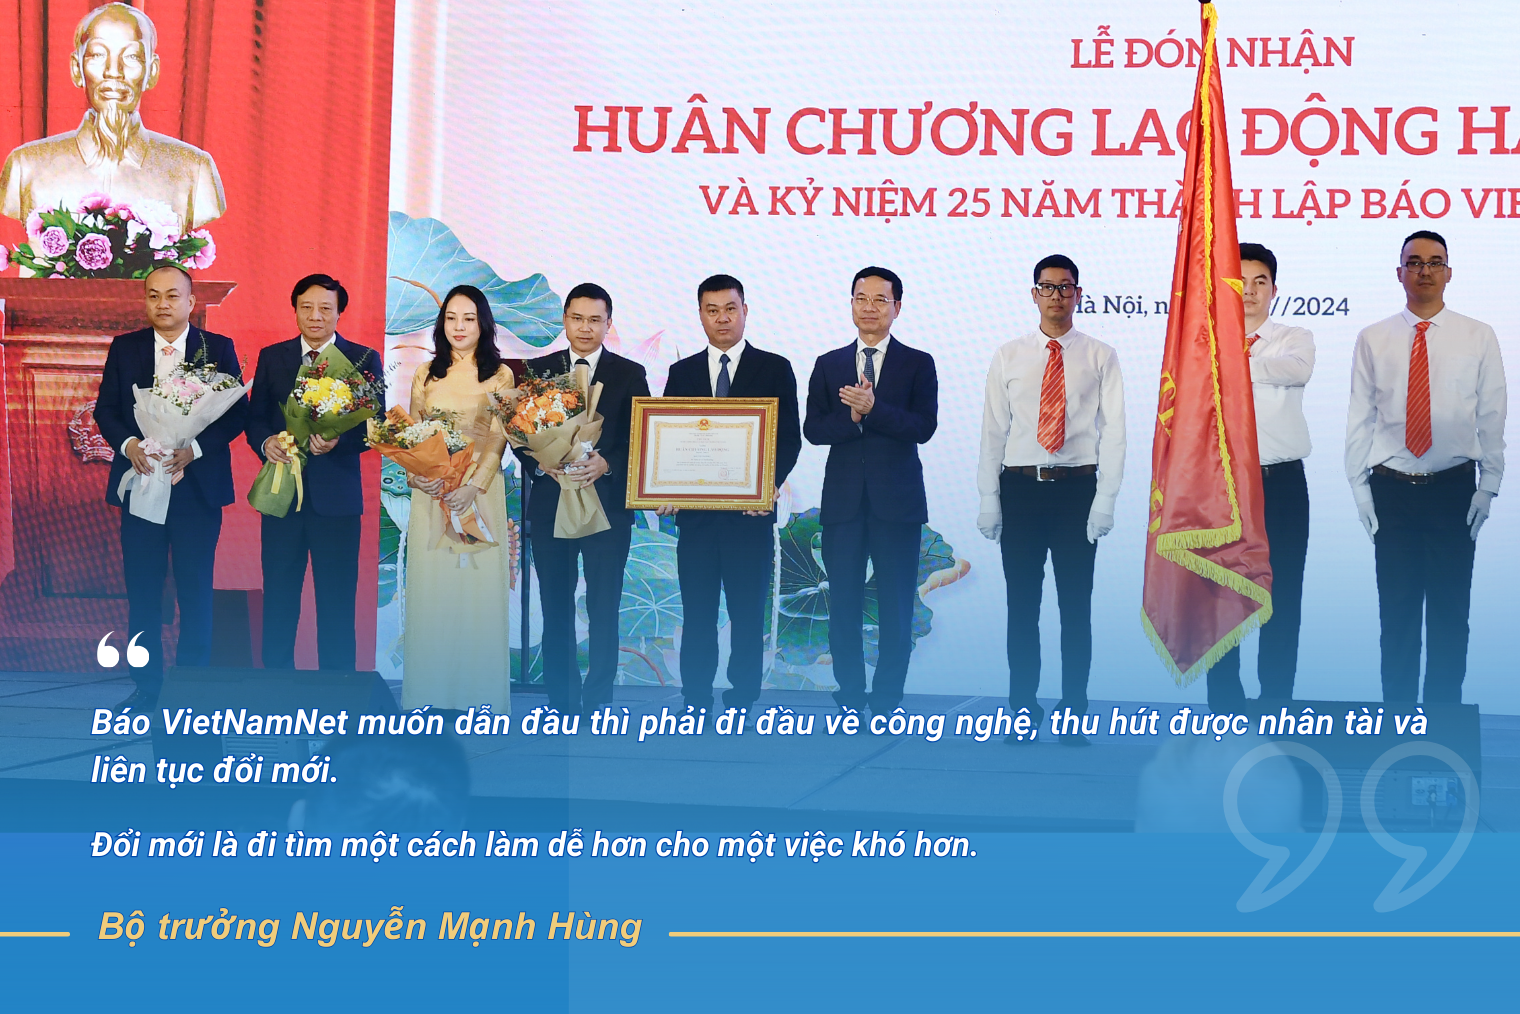 Báo VietNamNet muốn dẫn đầu thì phải đi đầu về công nghệ, thu hút được nhân tài và liên tục đổi mới- Ảnh 3.